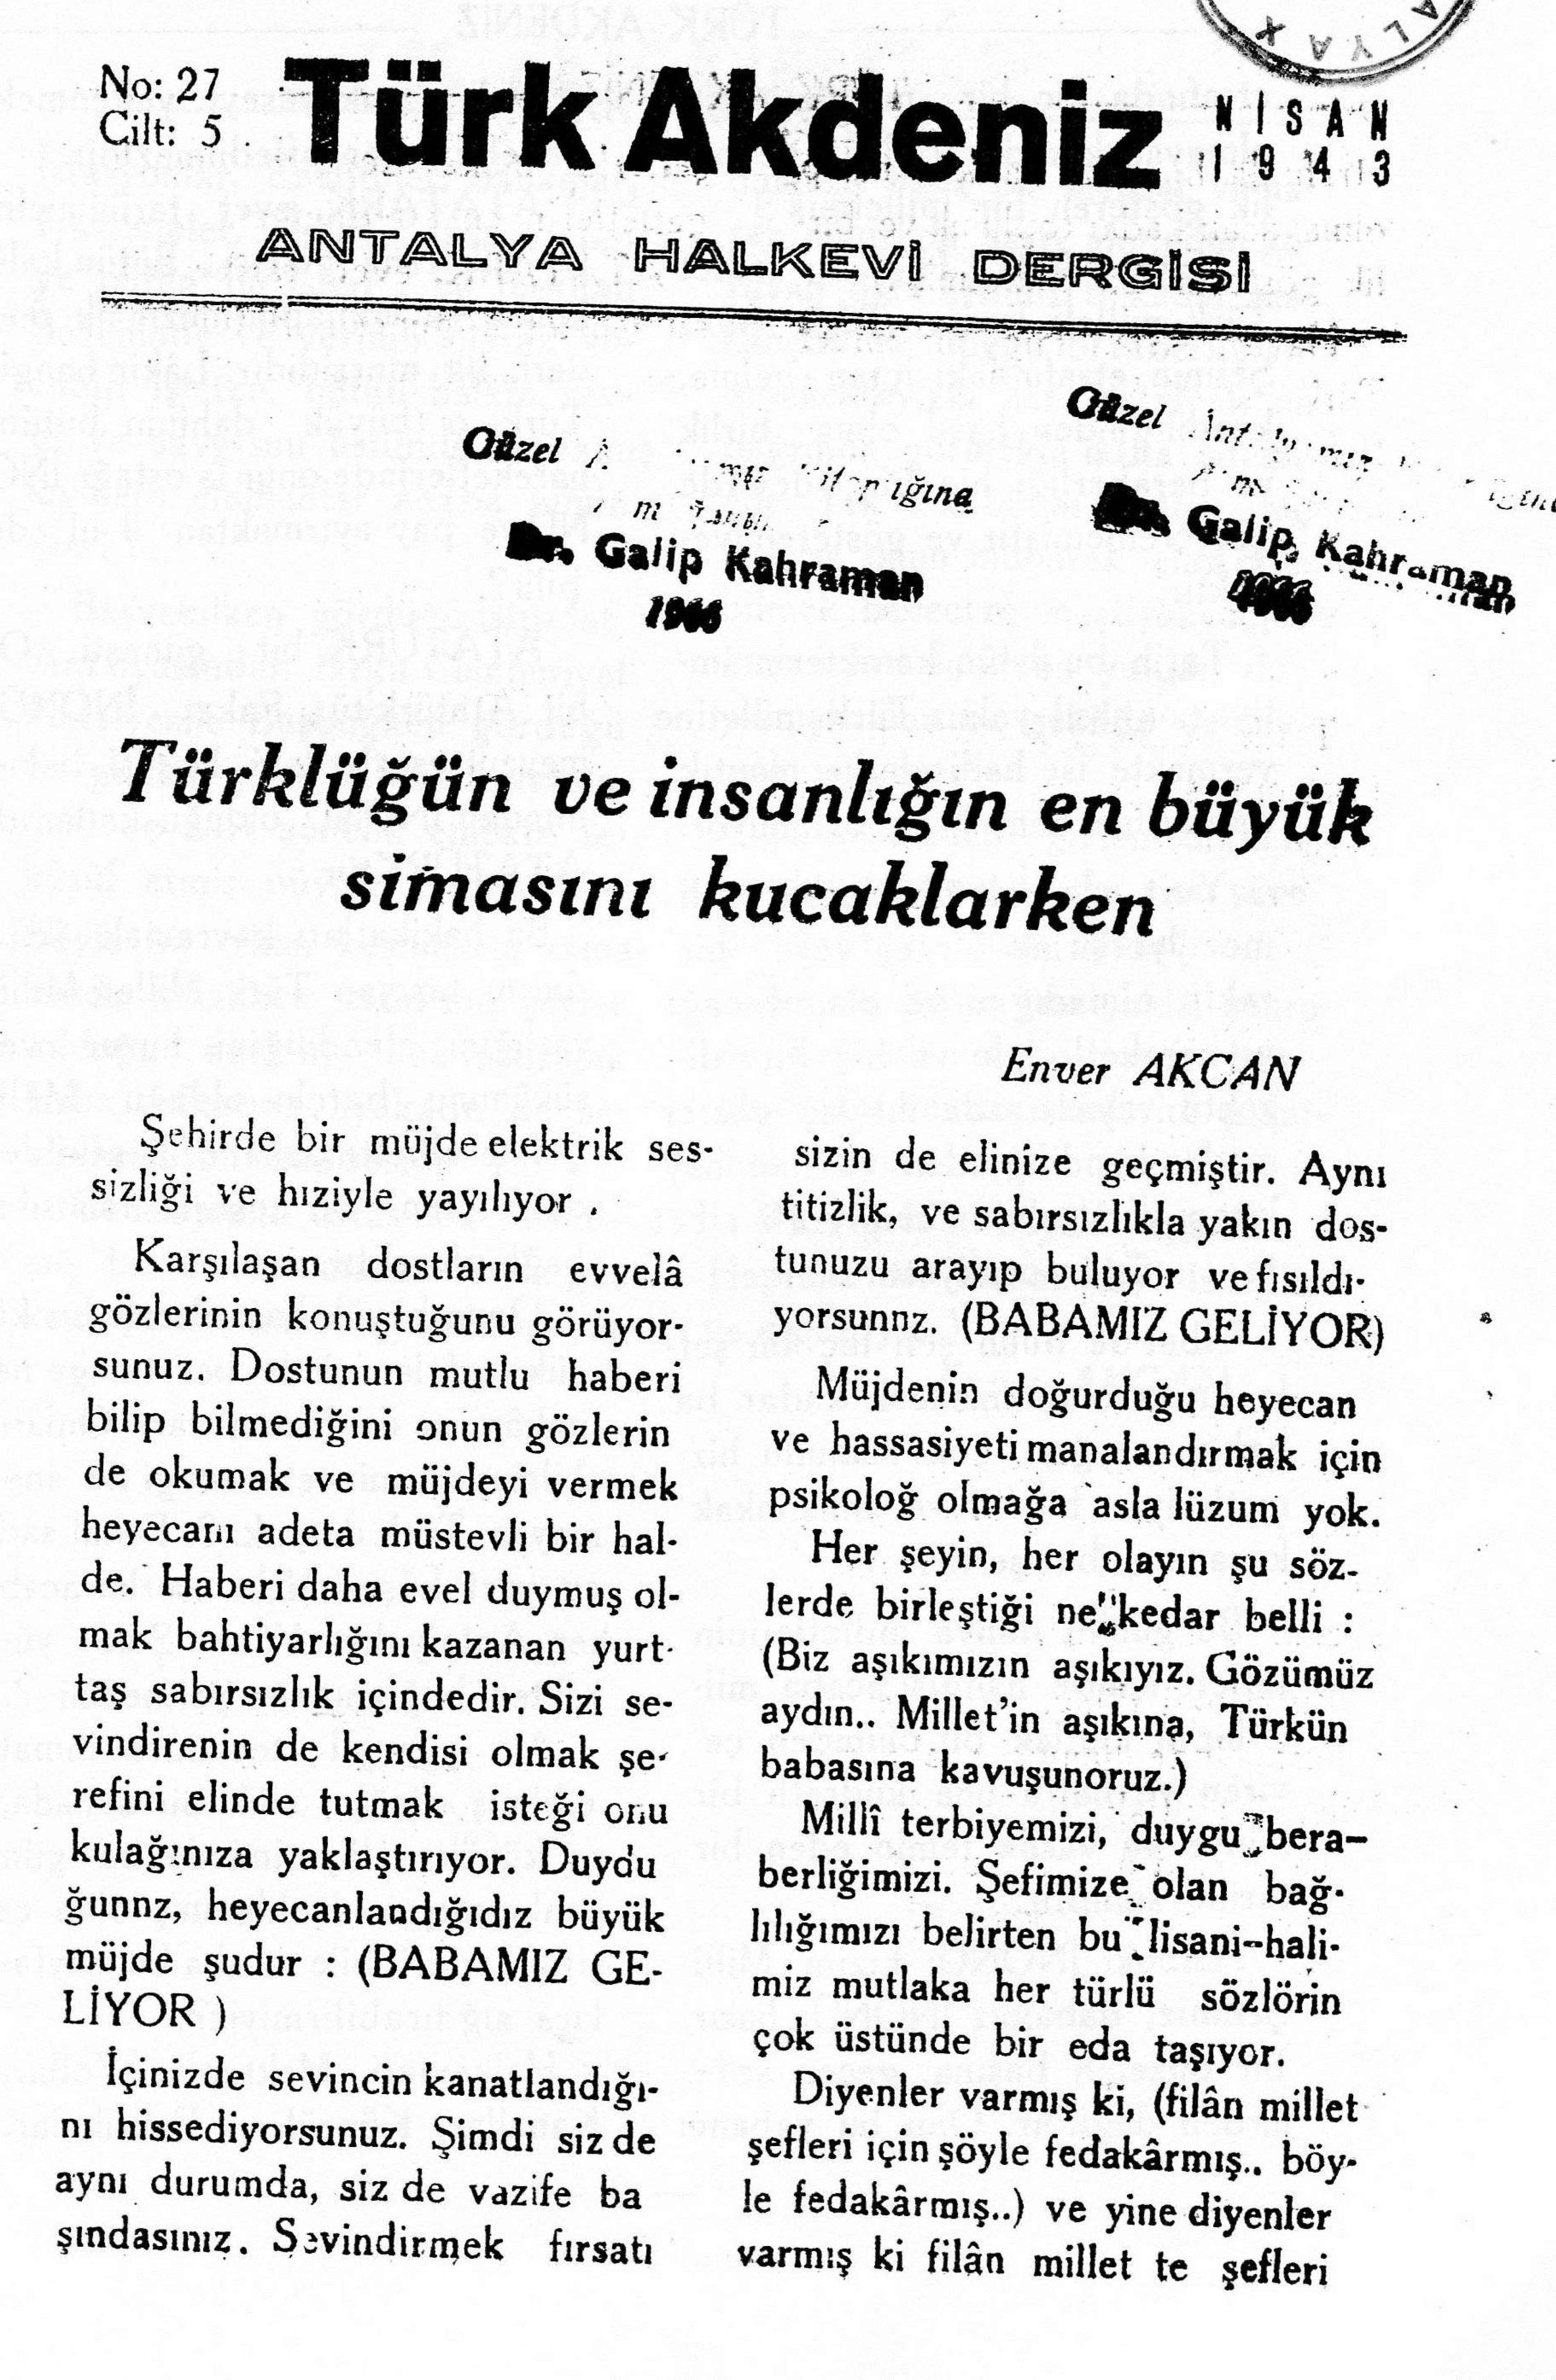 he-turk-akdeniz_1943-5(27)